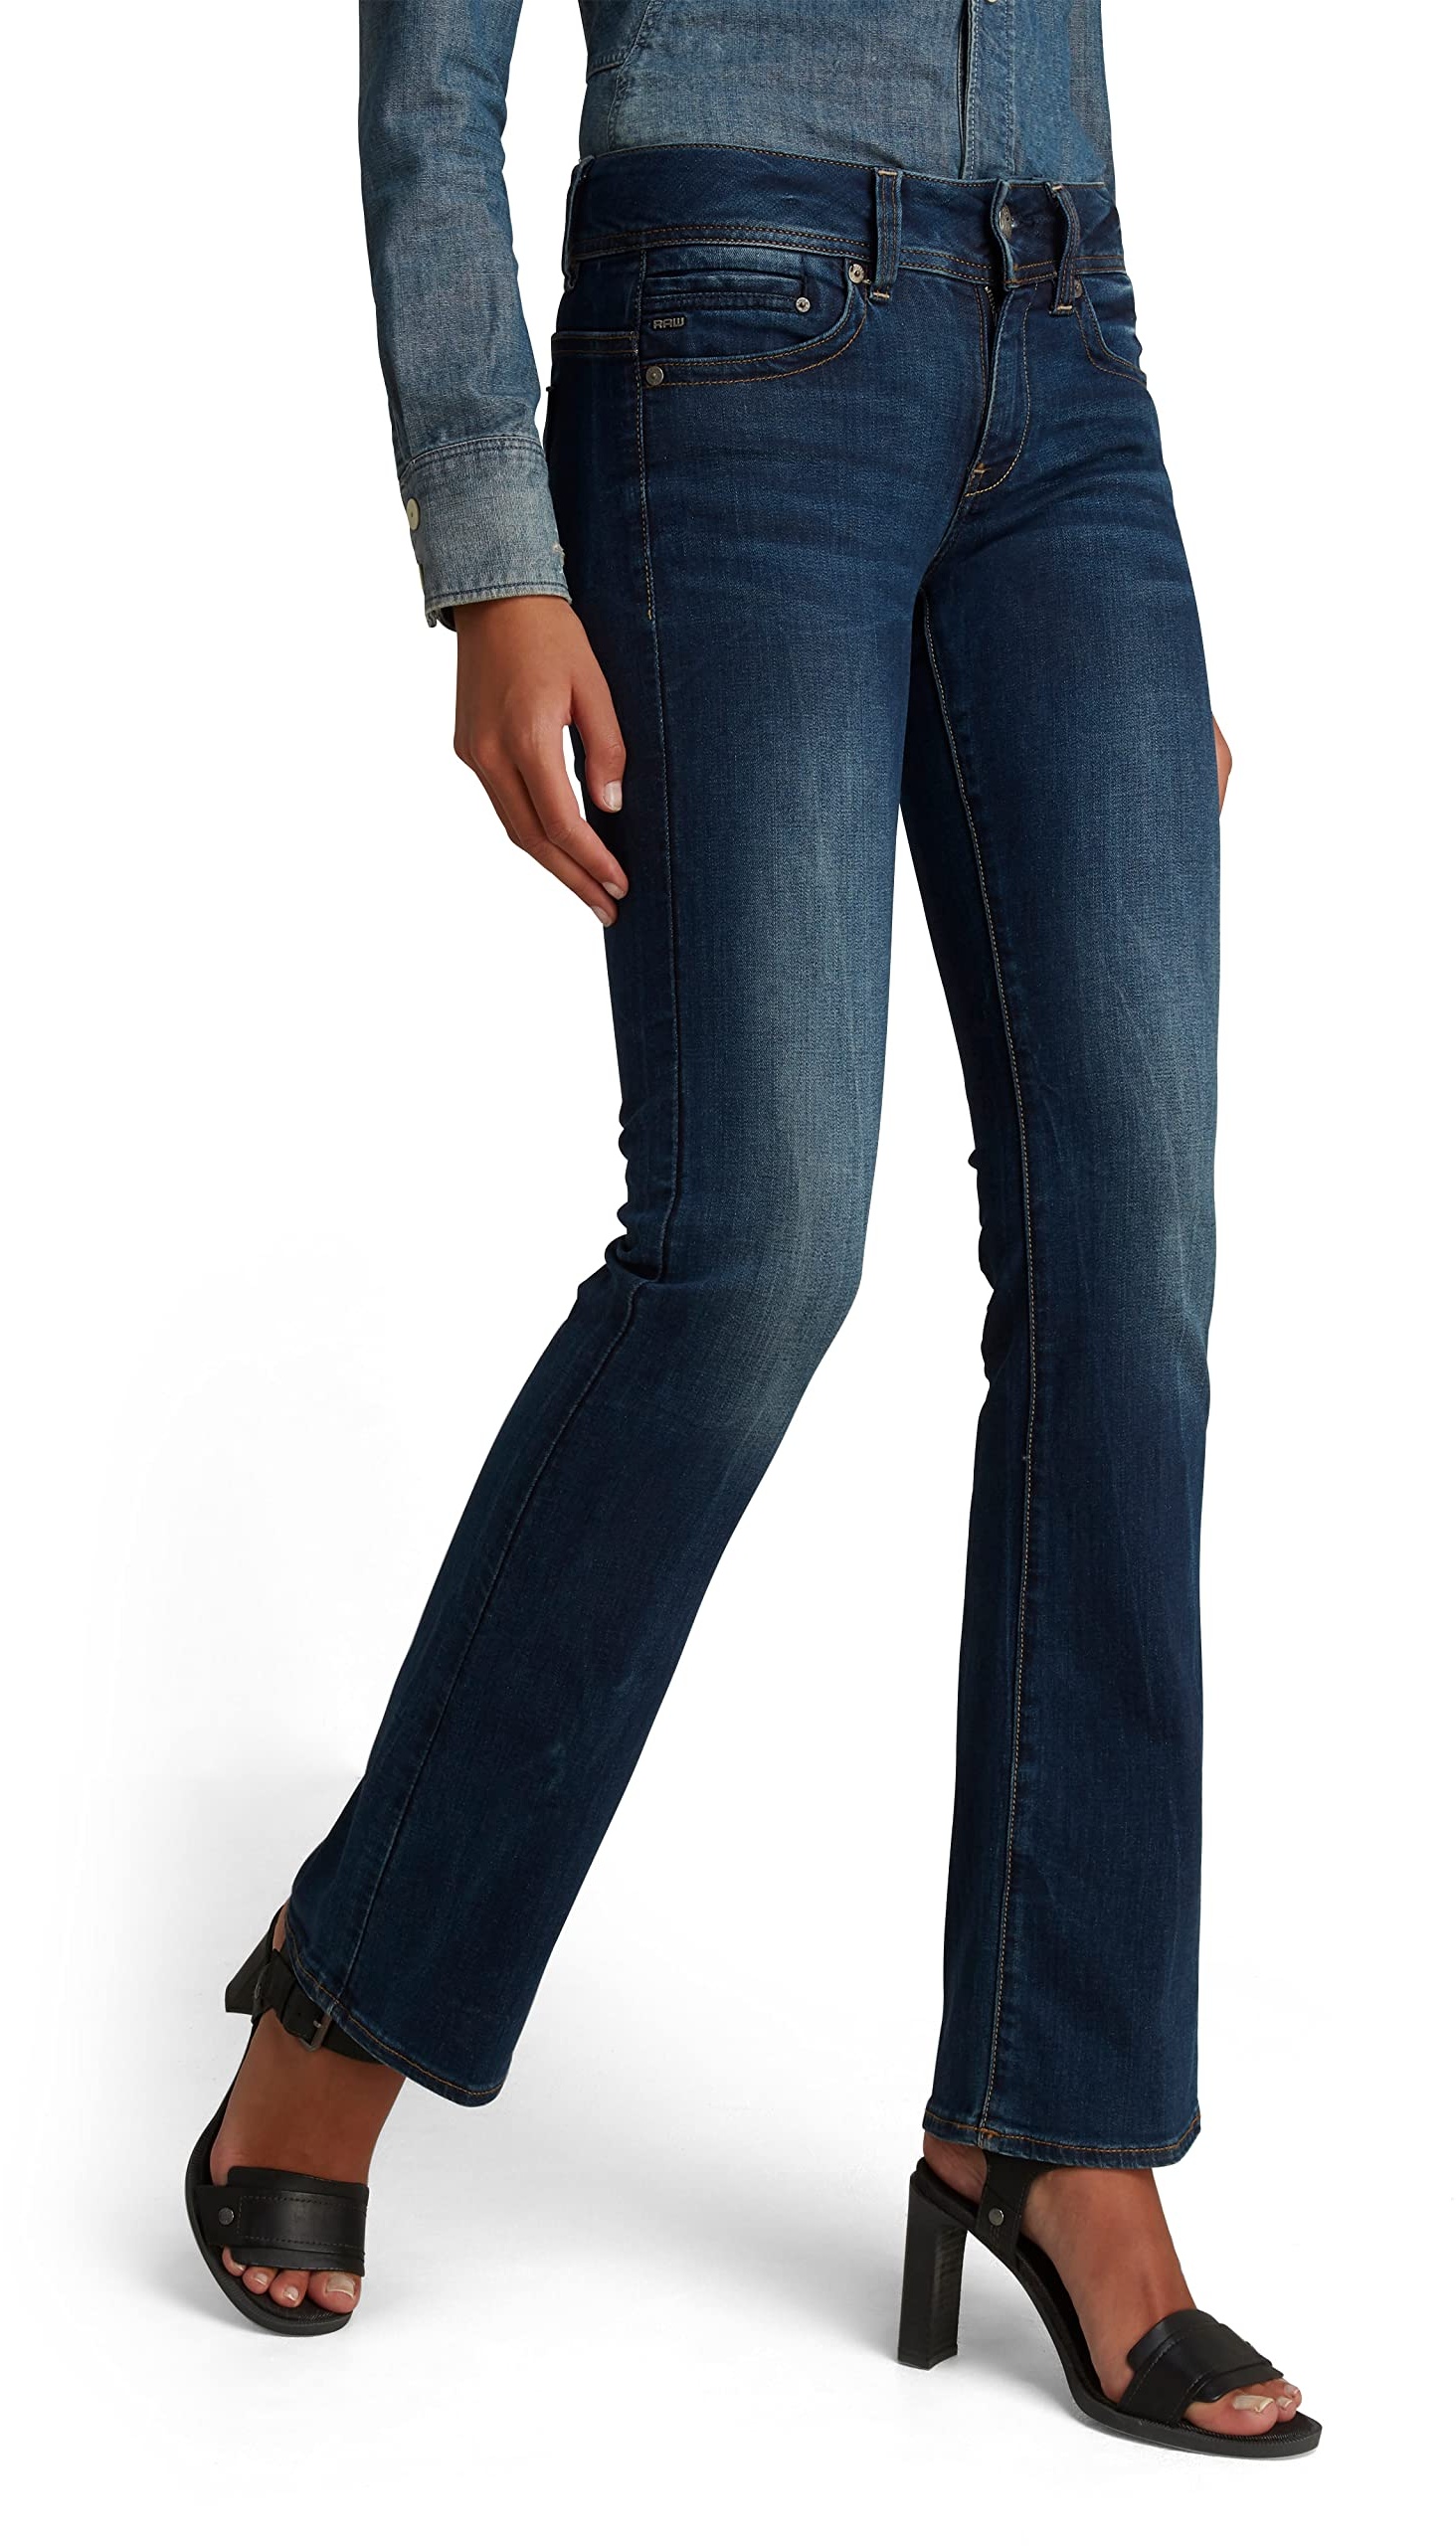 G-STAR RAW Damen Midge Bootcut Jeans, Blau (dk aged D01896-6553-89), 25W / 30L